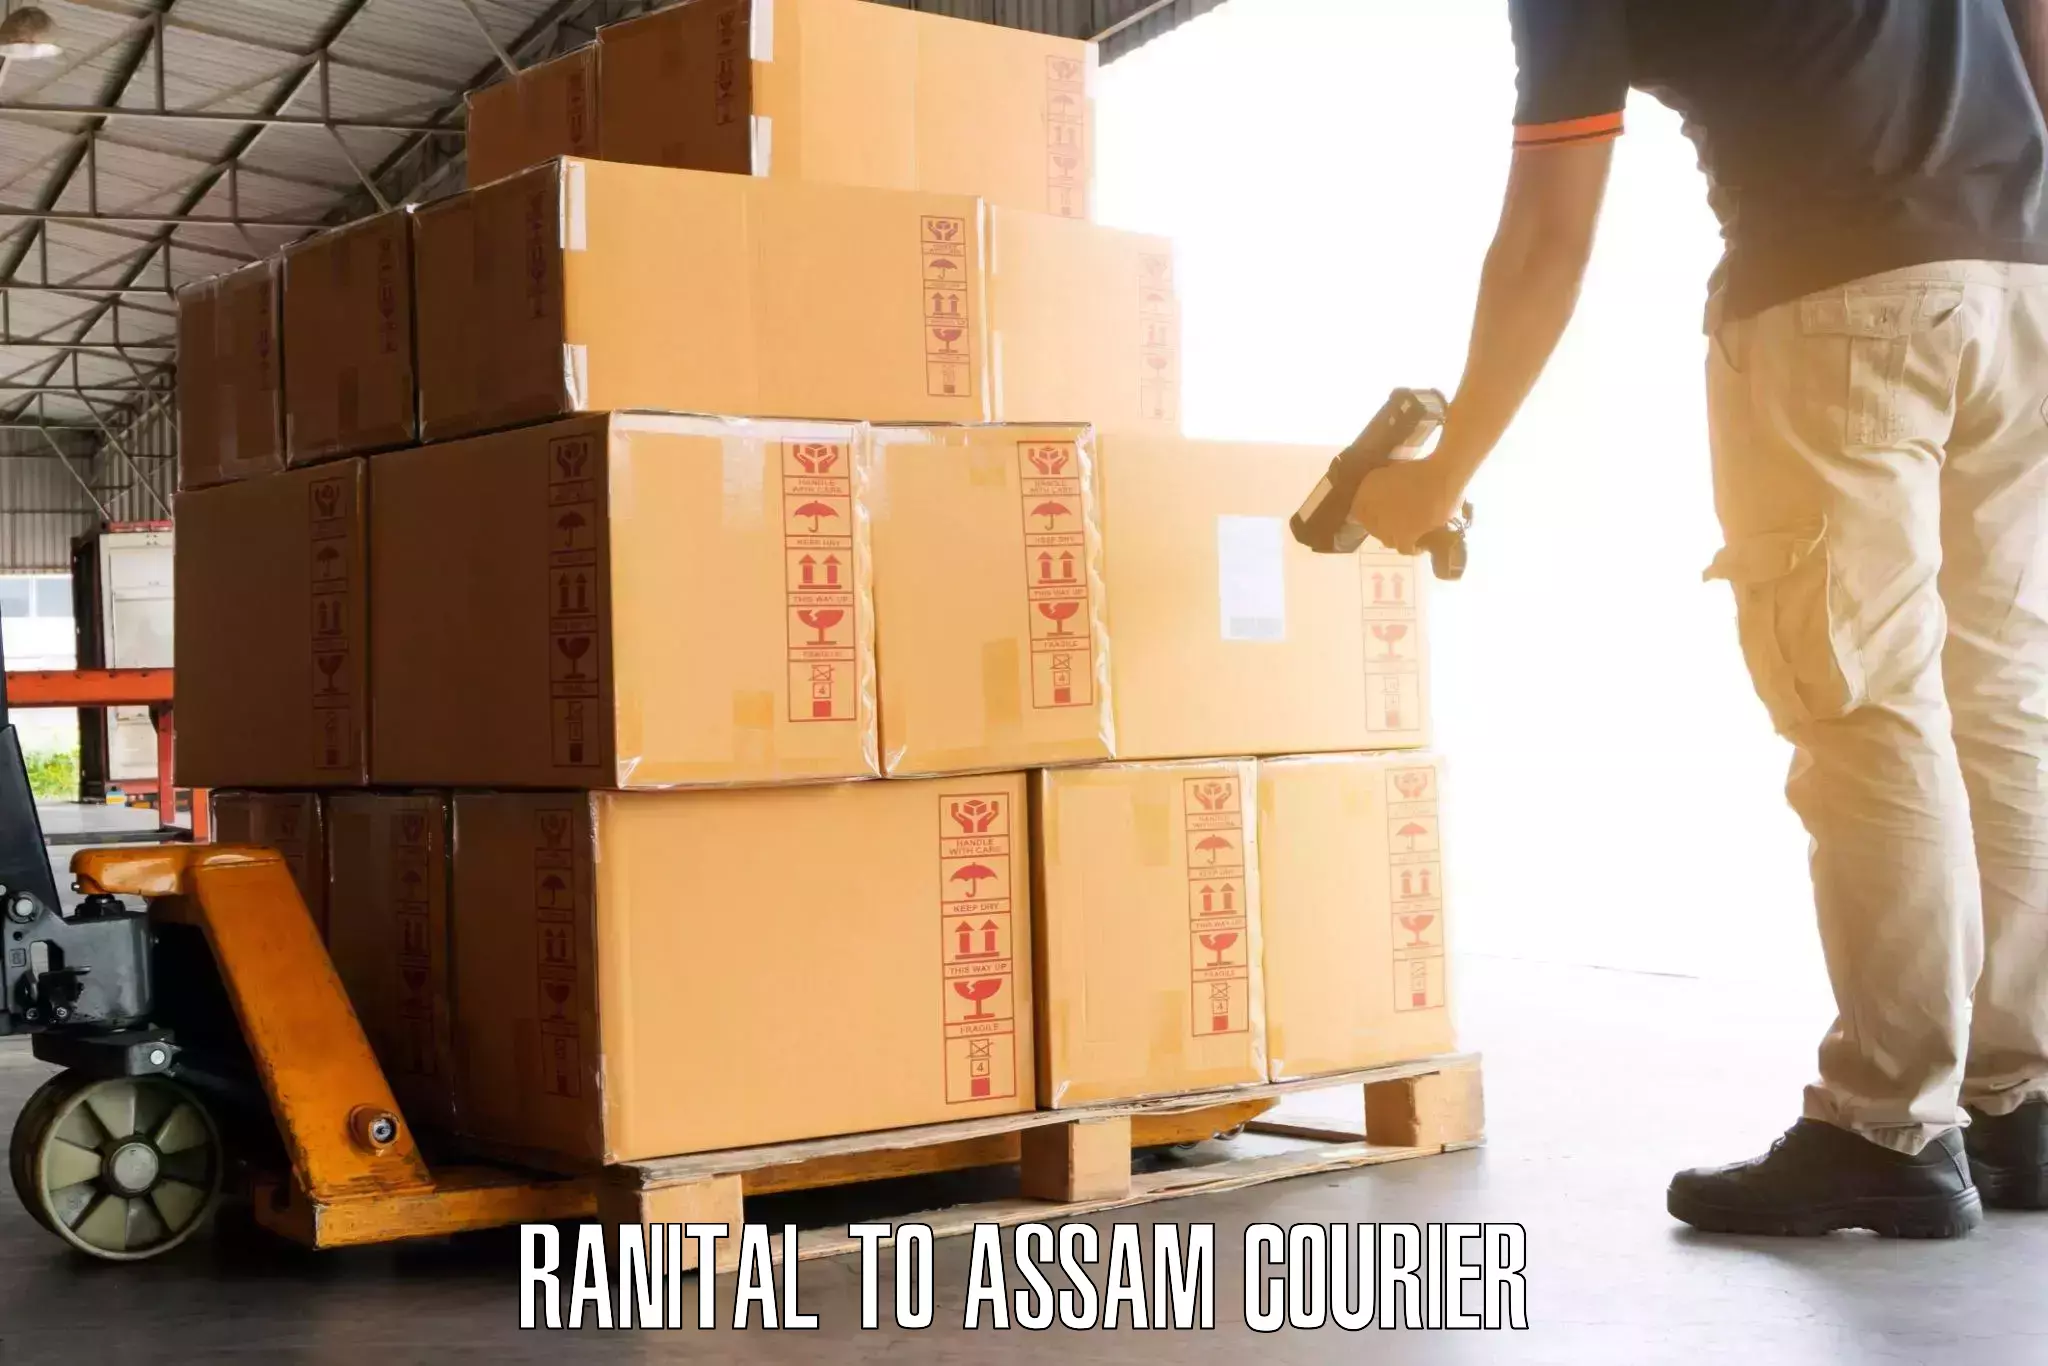 Door-to-door baggage service Ranital to Assam